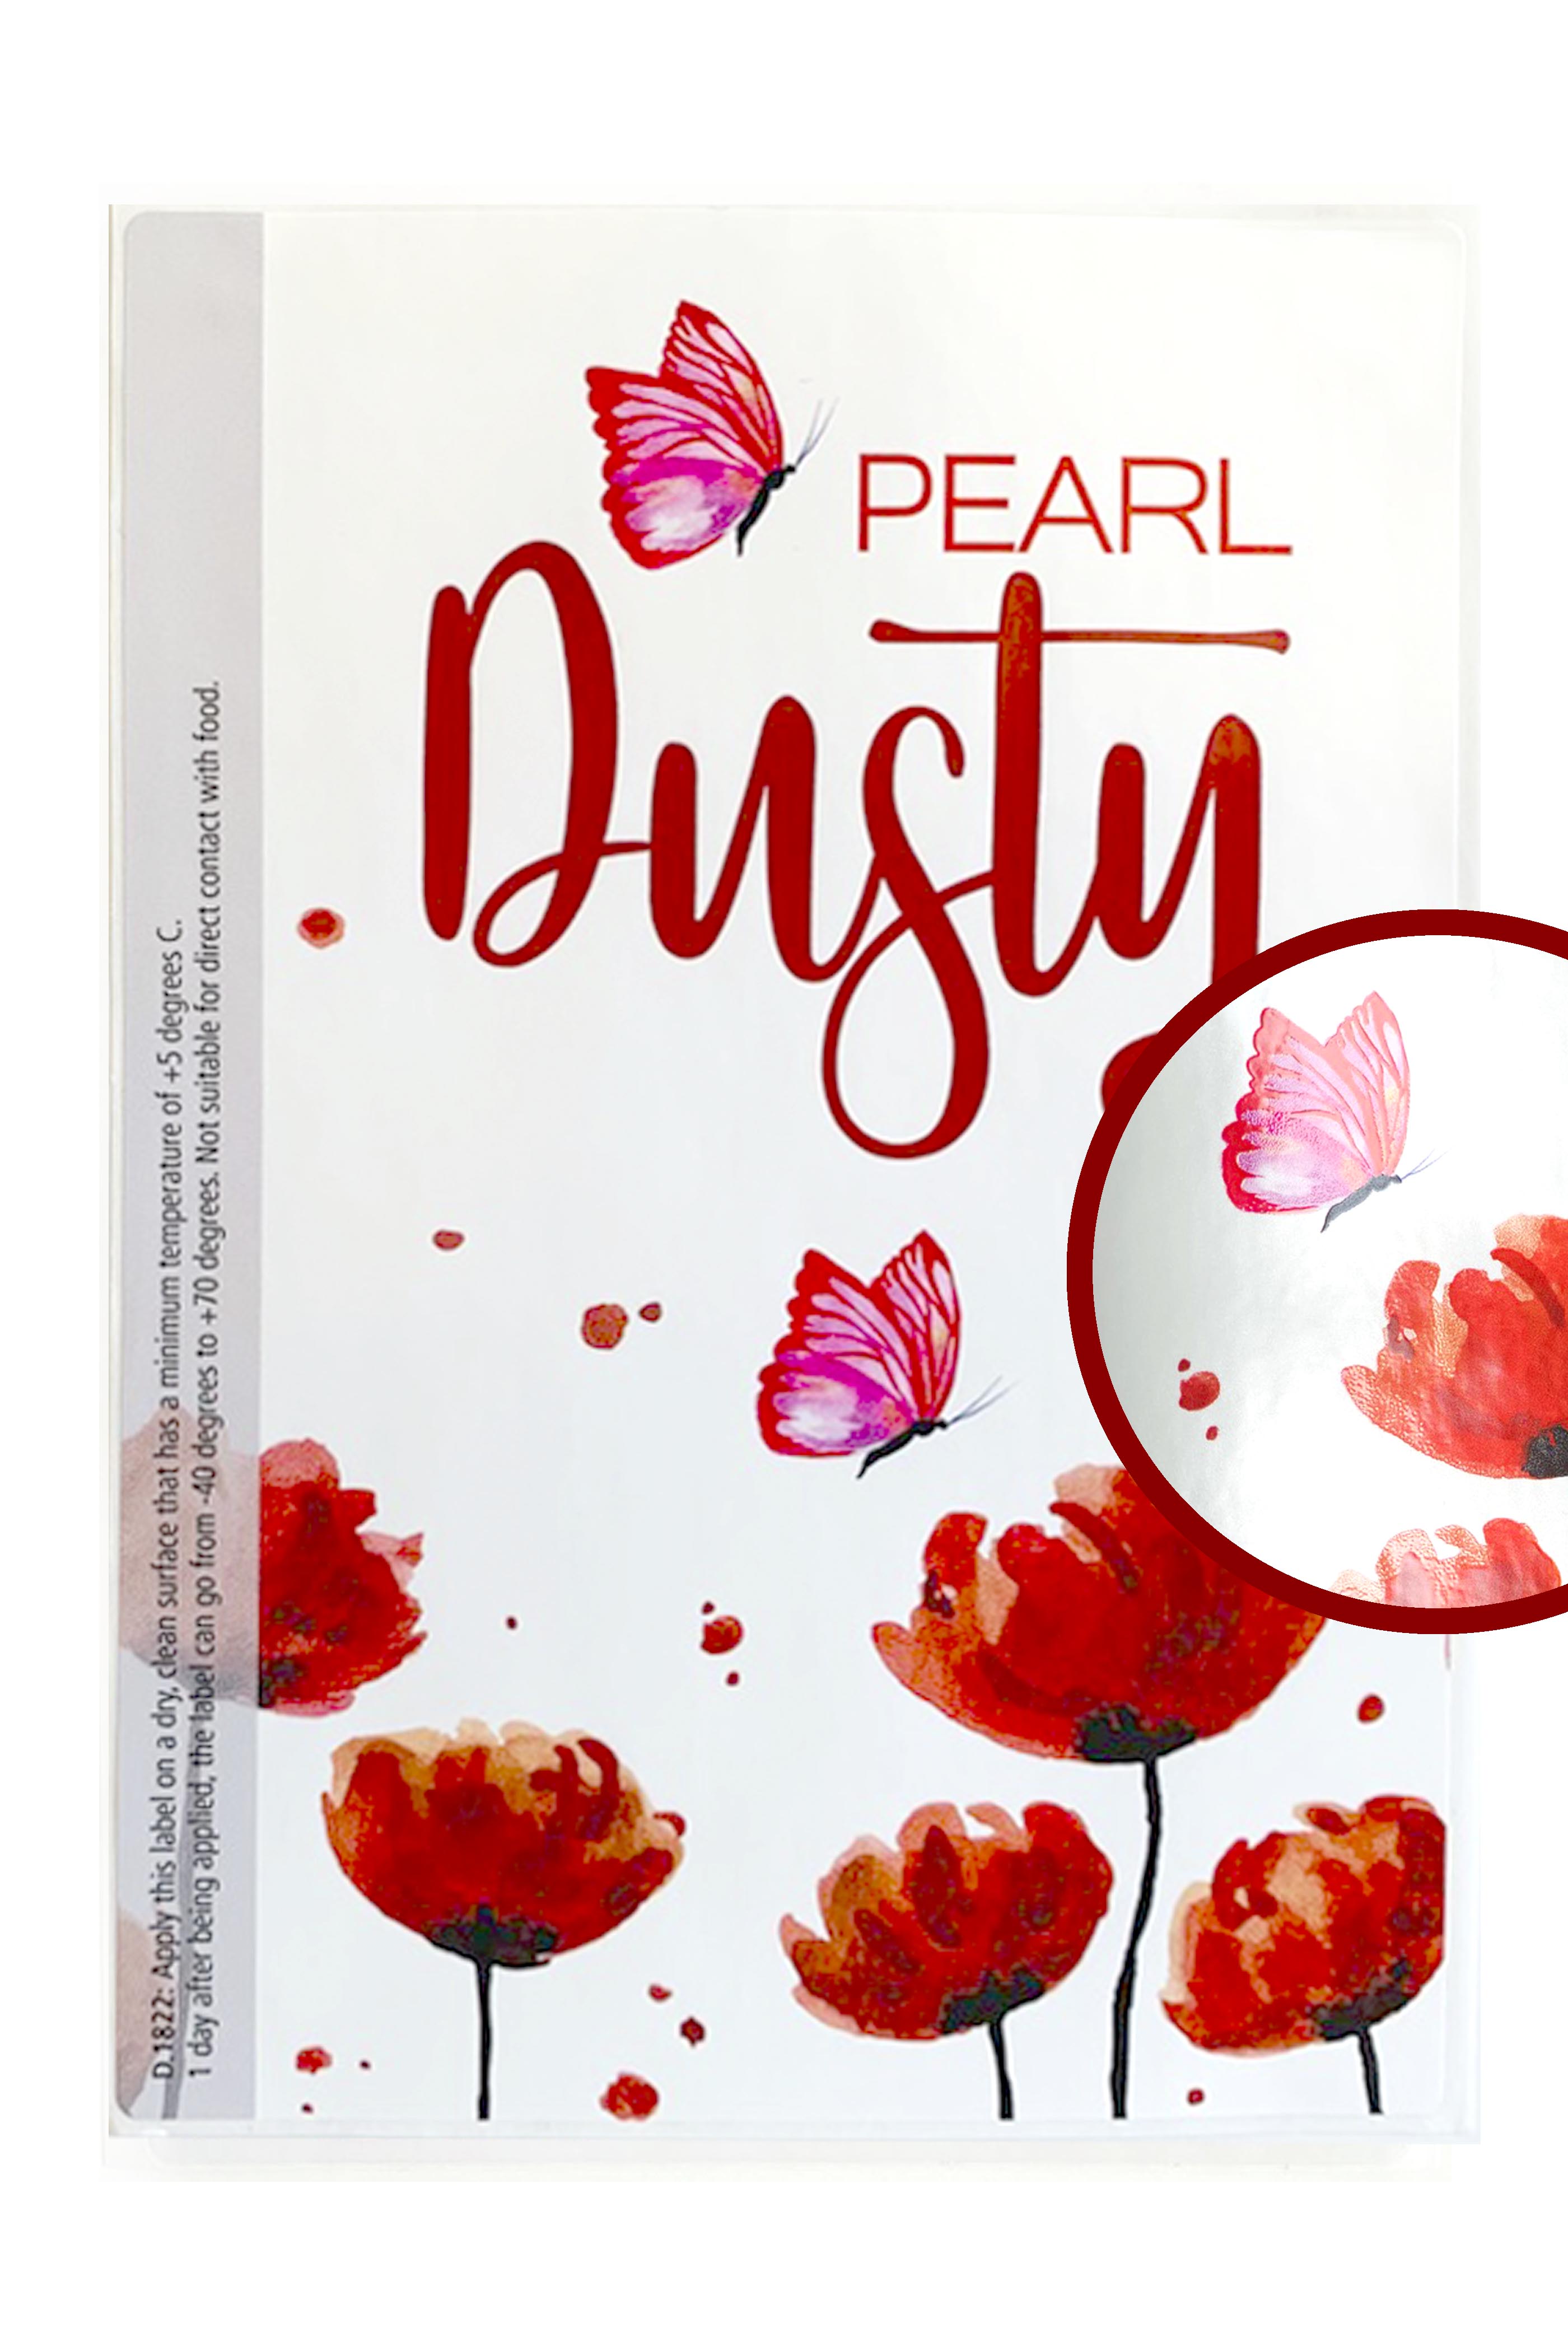 Label Dusty pearl